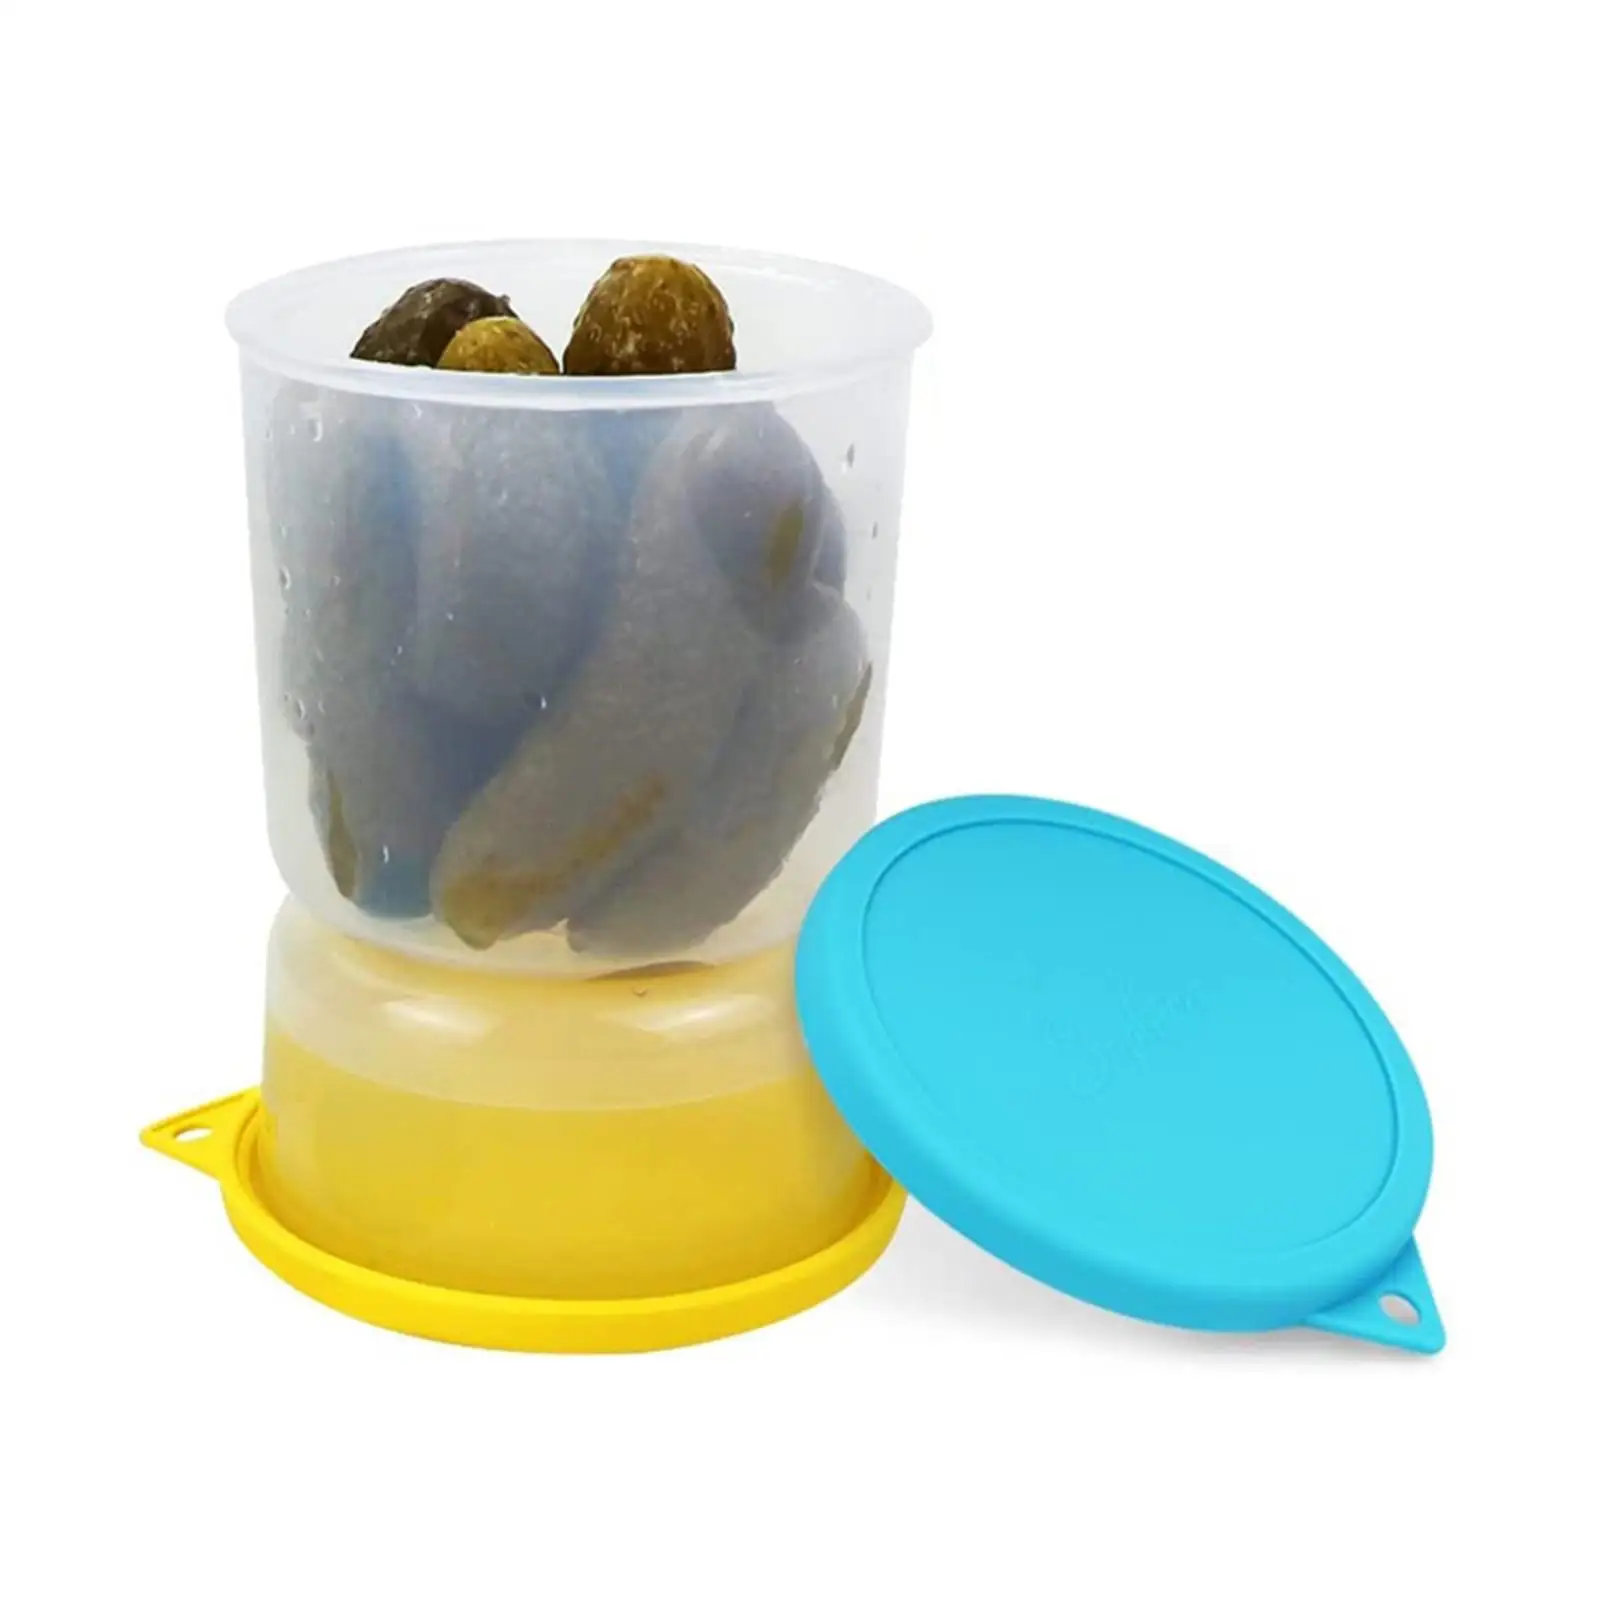 Pickle Jar Transparent Pickle and Olive Hourglass Jar for Fruits Okra Olives